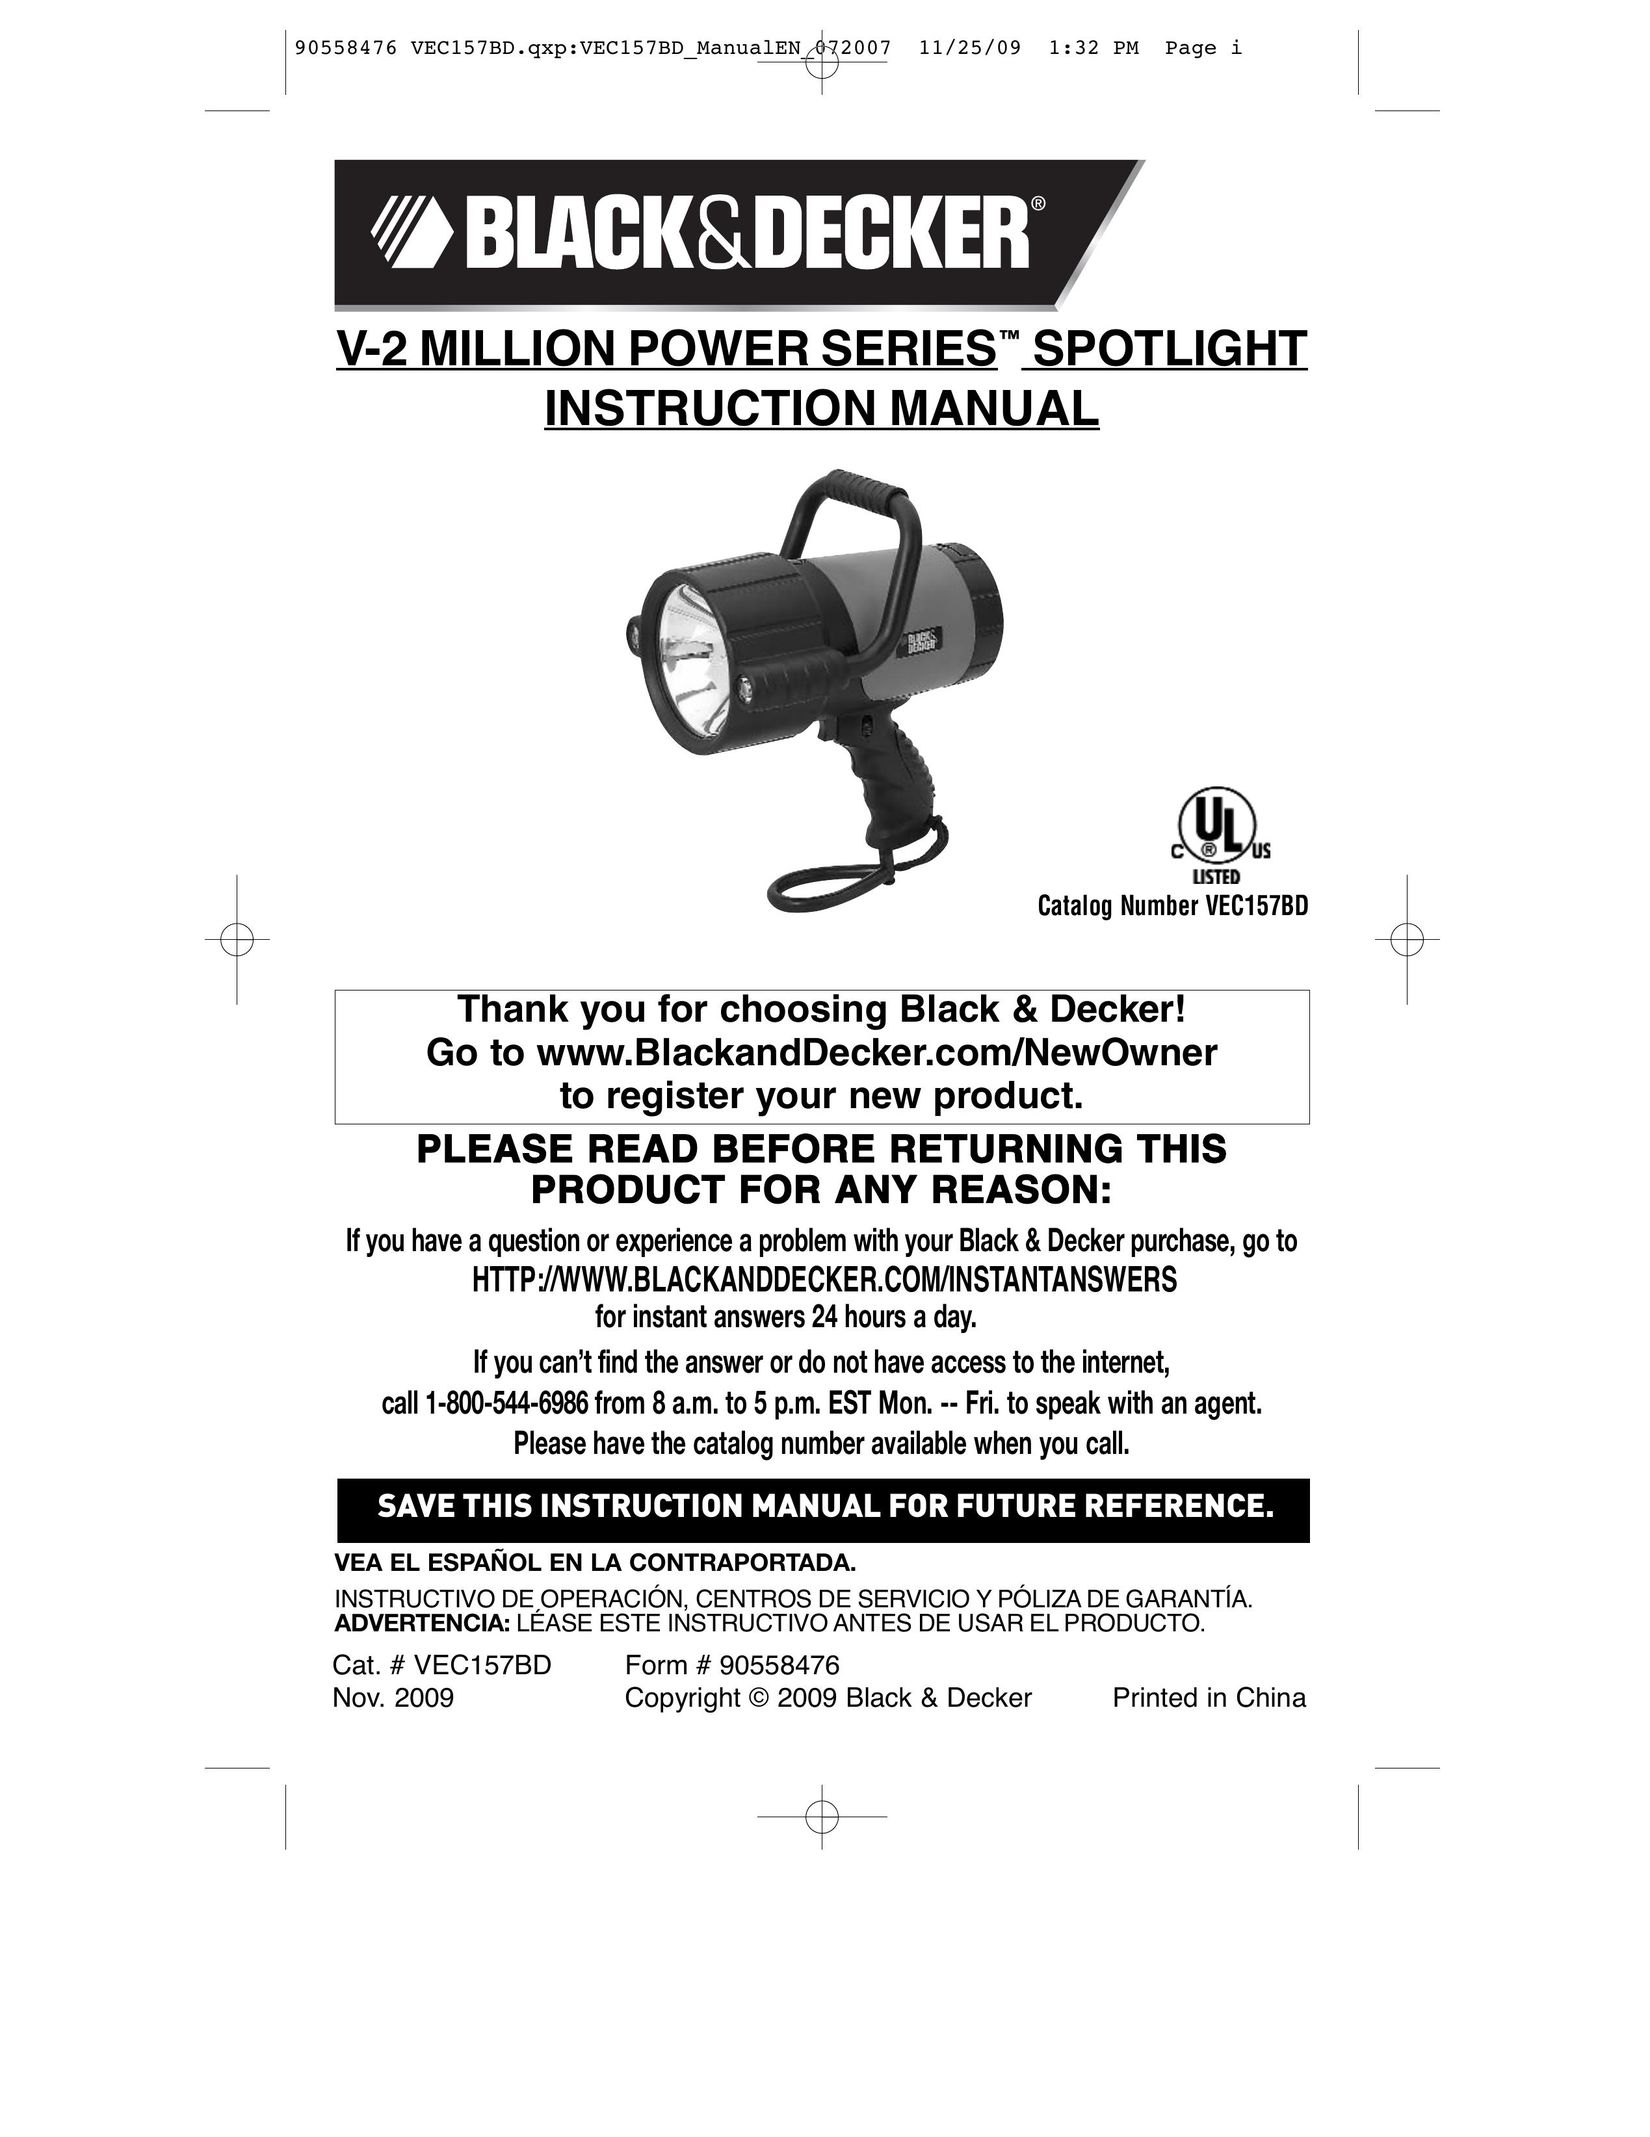 Black & Decker VEC157BD Work Light User Manual